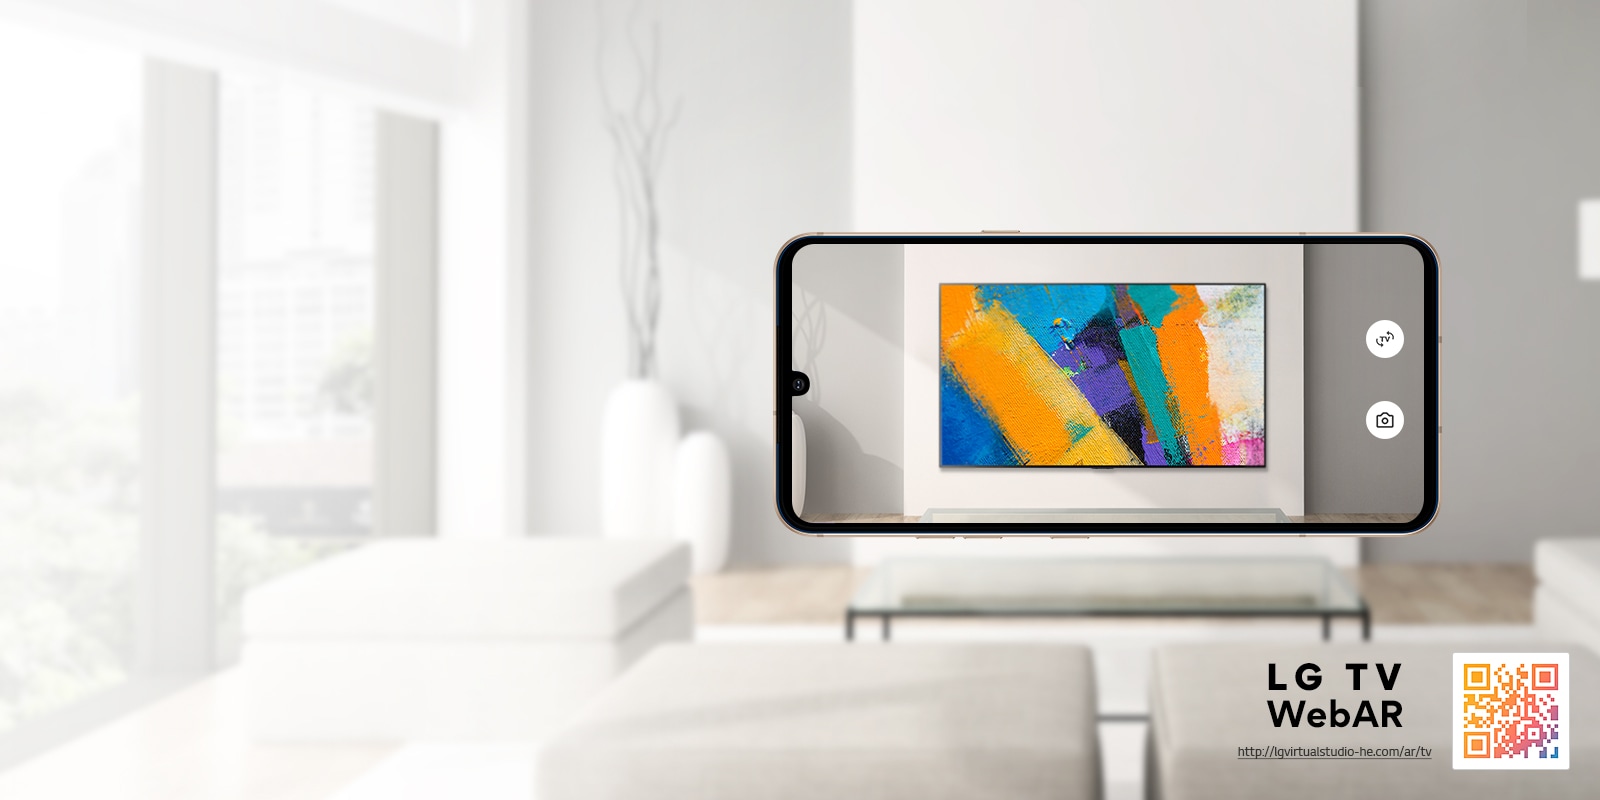 Это изображение телевизора LG OLED, смоделированное в дополненной реальности в веб-среде. Изображения из мобильного телефона накладываются друг на друга в минималистичном пространстве. Снизу справа показан QR-код.